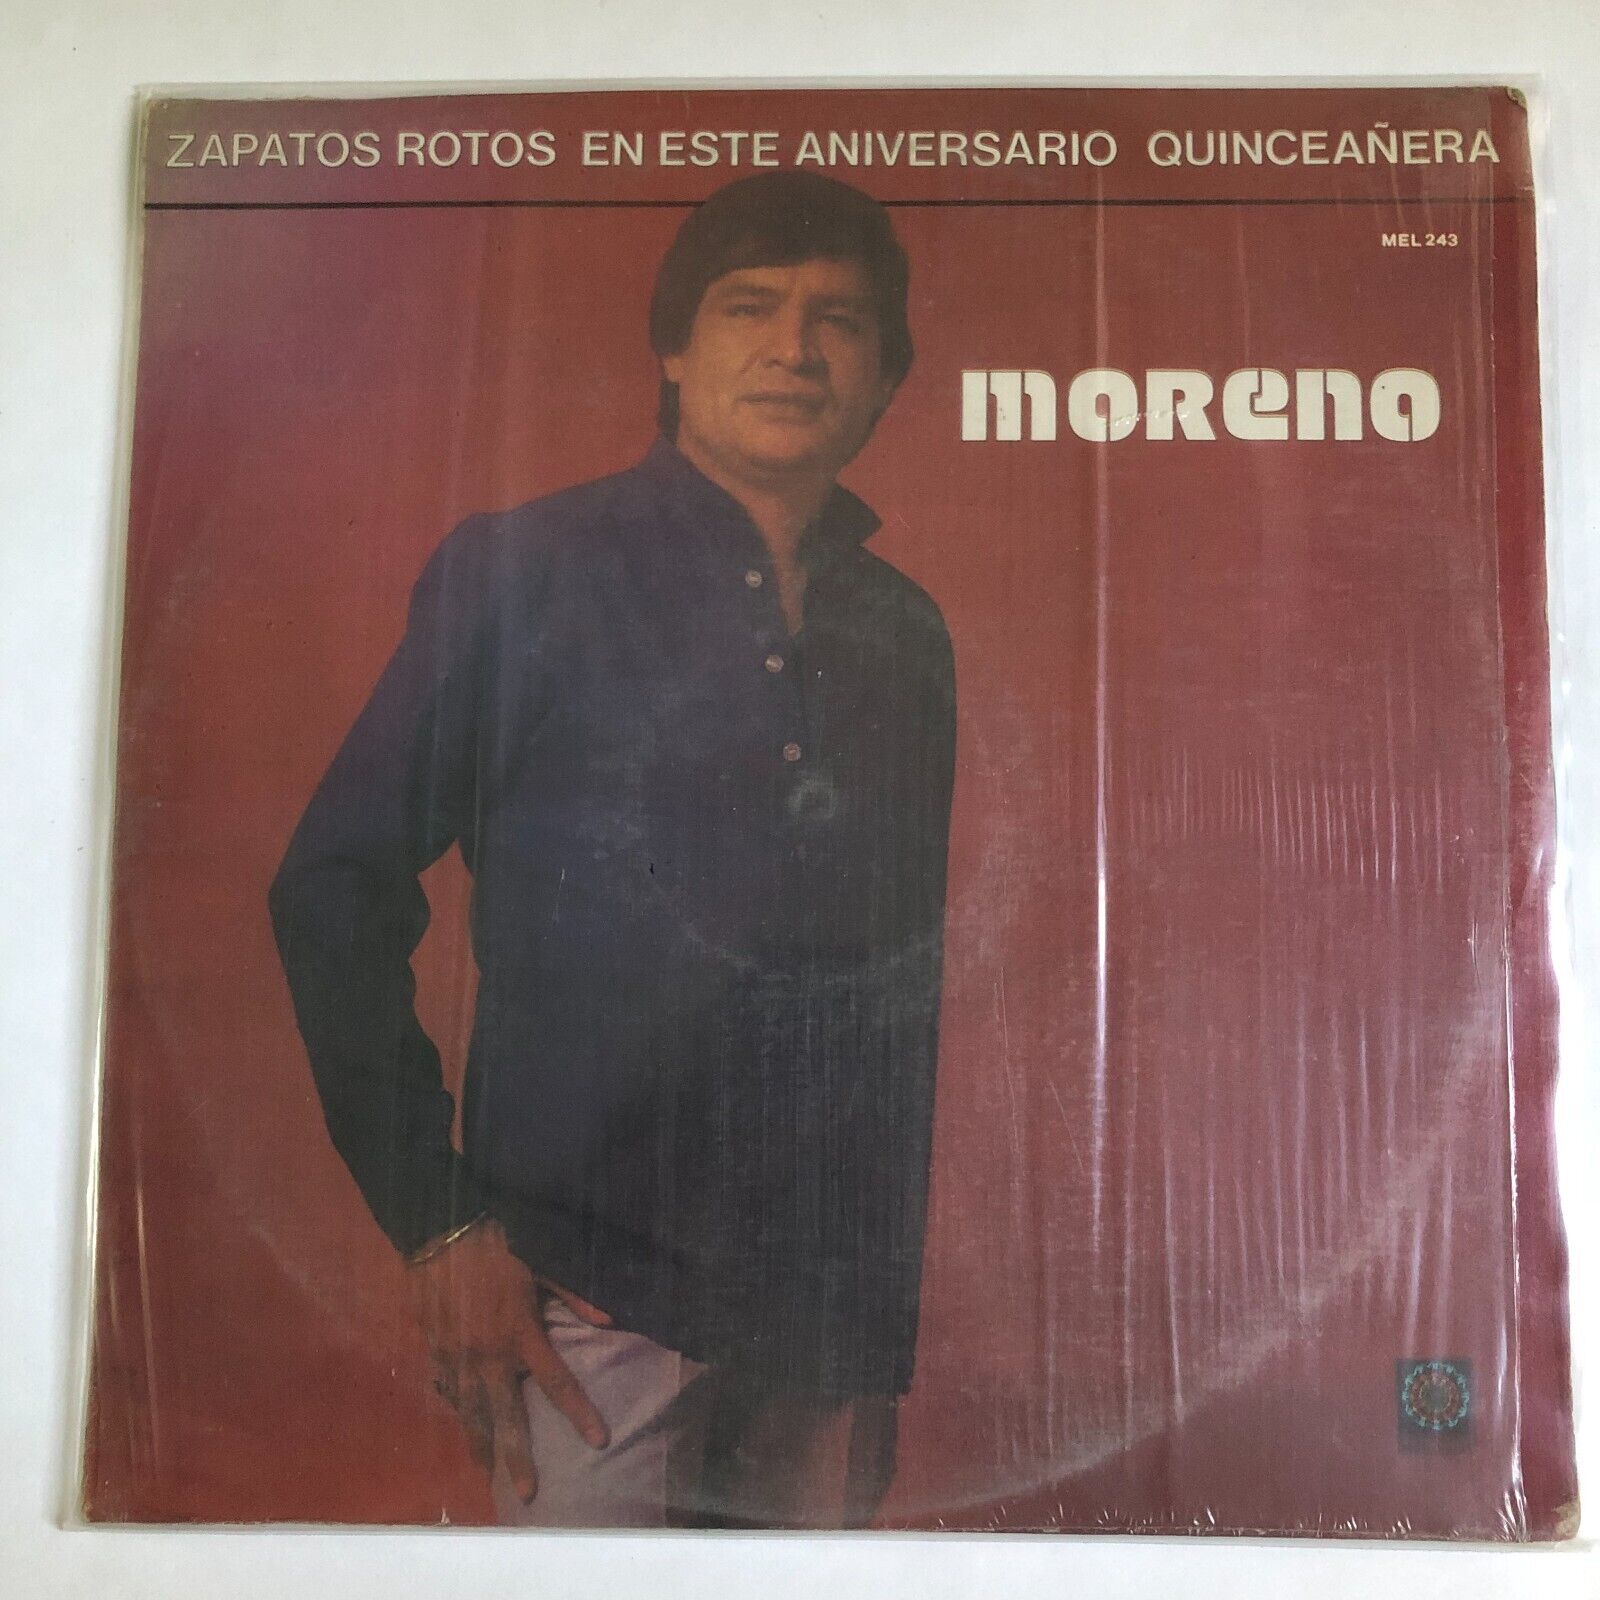 MORENO - ZAPATOS ROTOS - MEXICAN LP, PROMO, LATIN POP